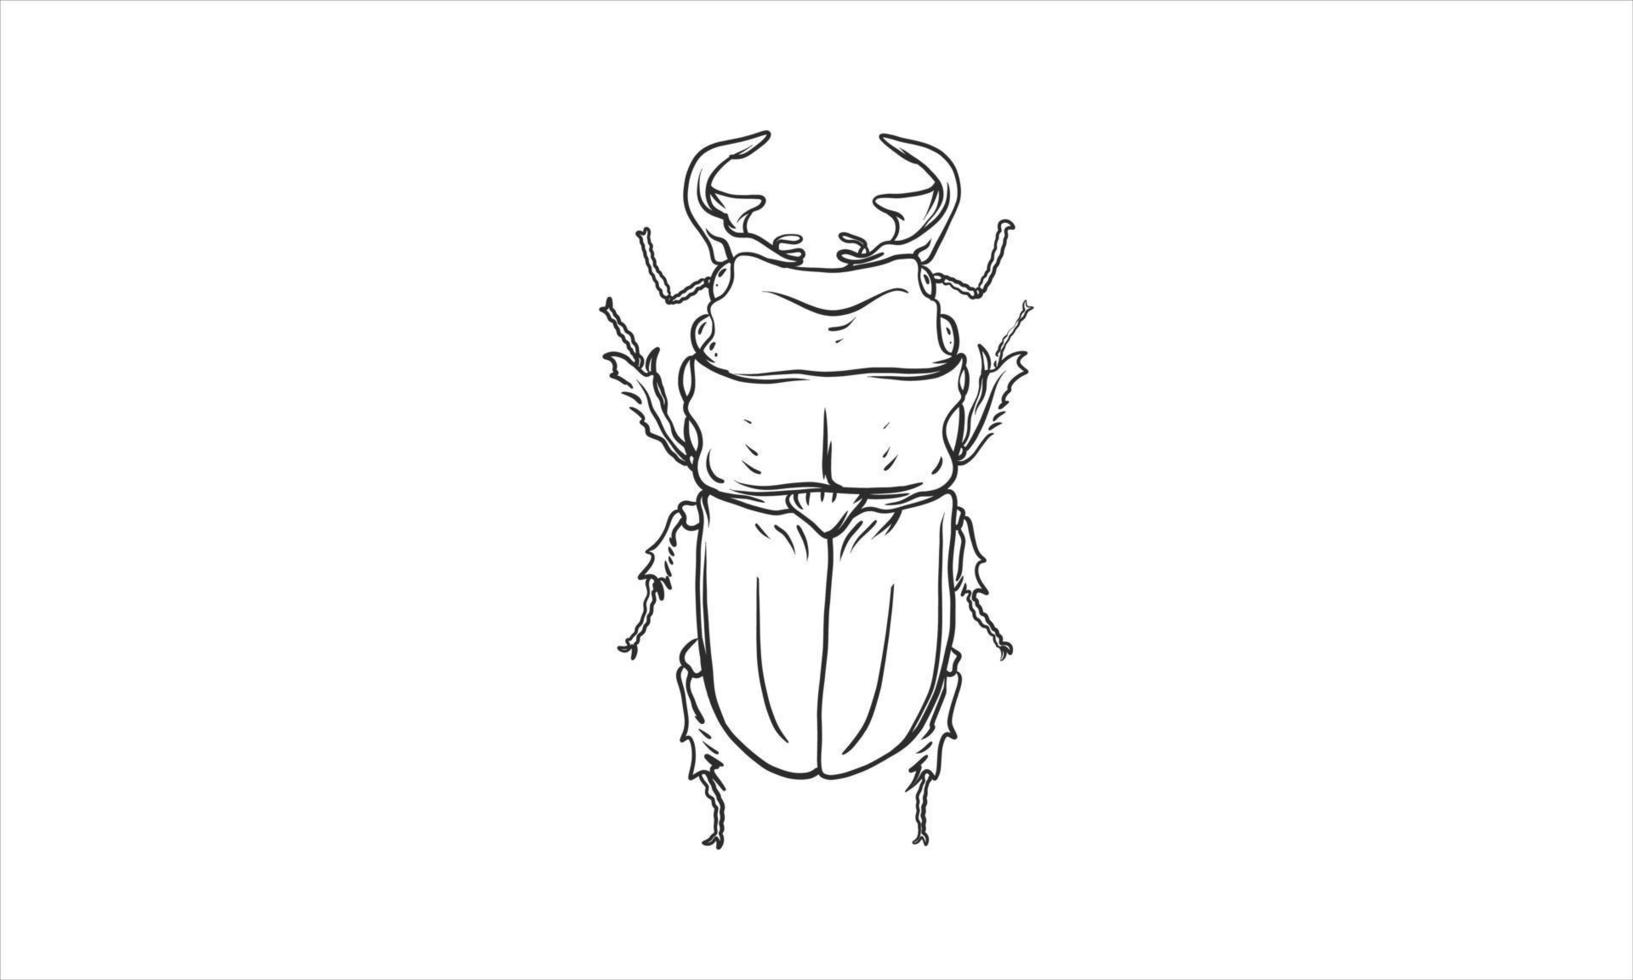 ilustración de escarabajo en una mano incolora dibujada vector